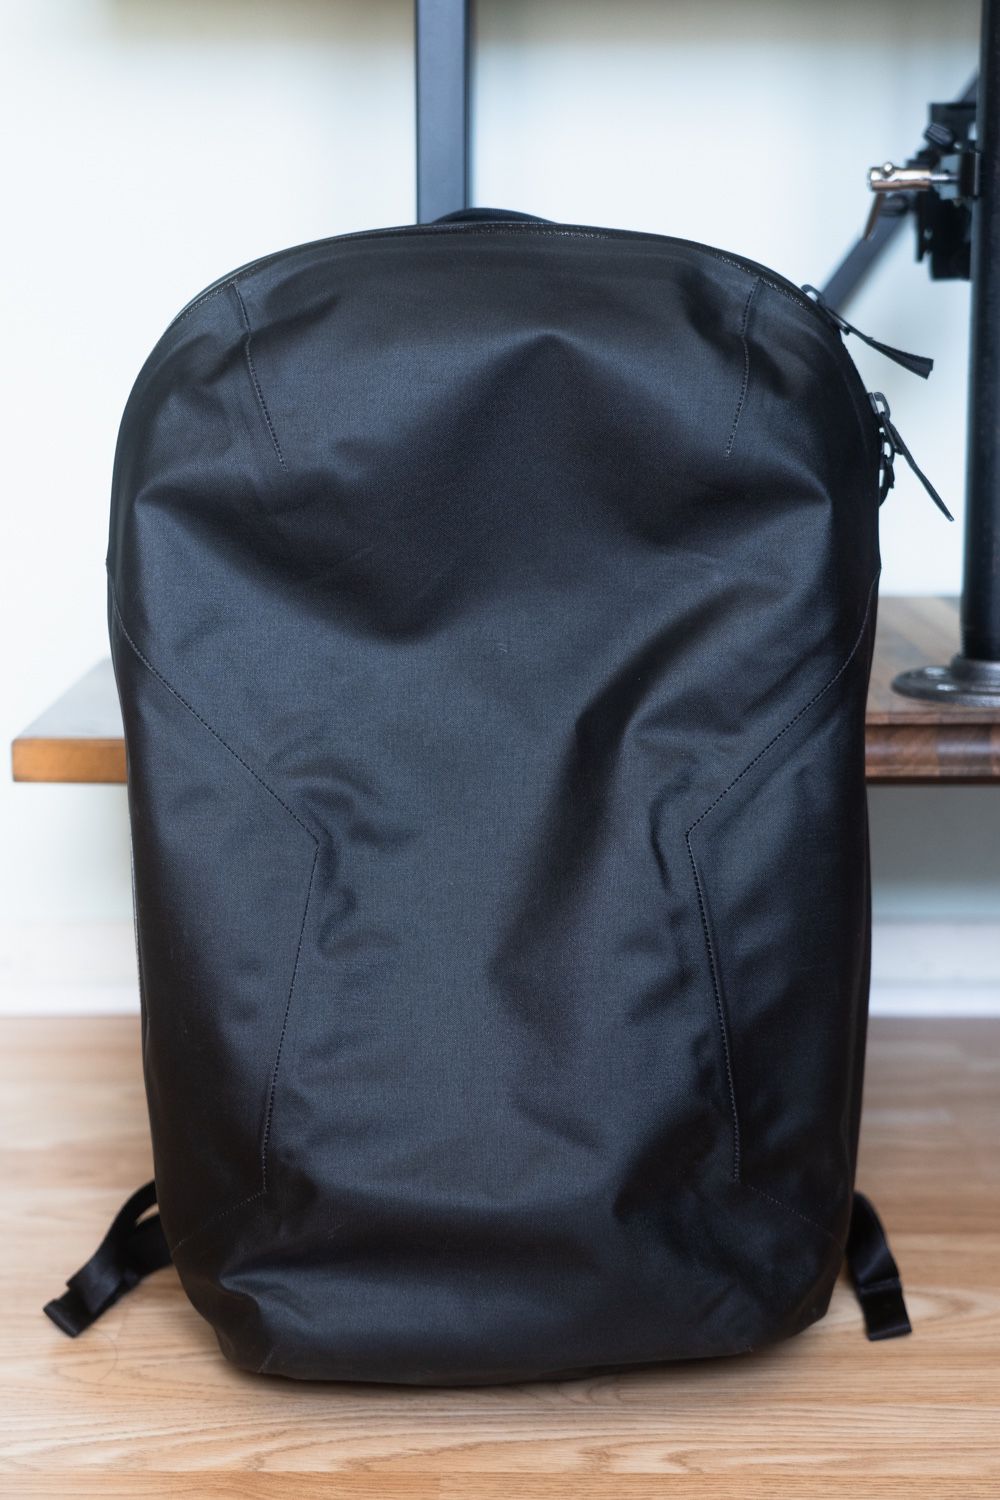 Veilance Nomin V2 Backpack